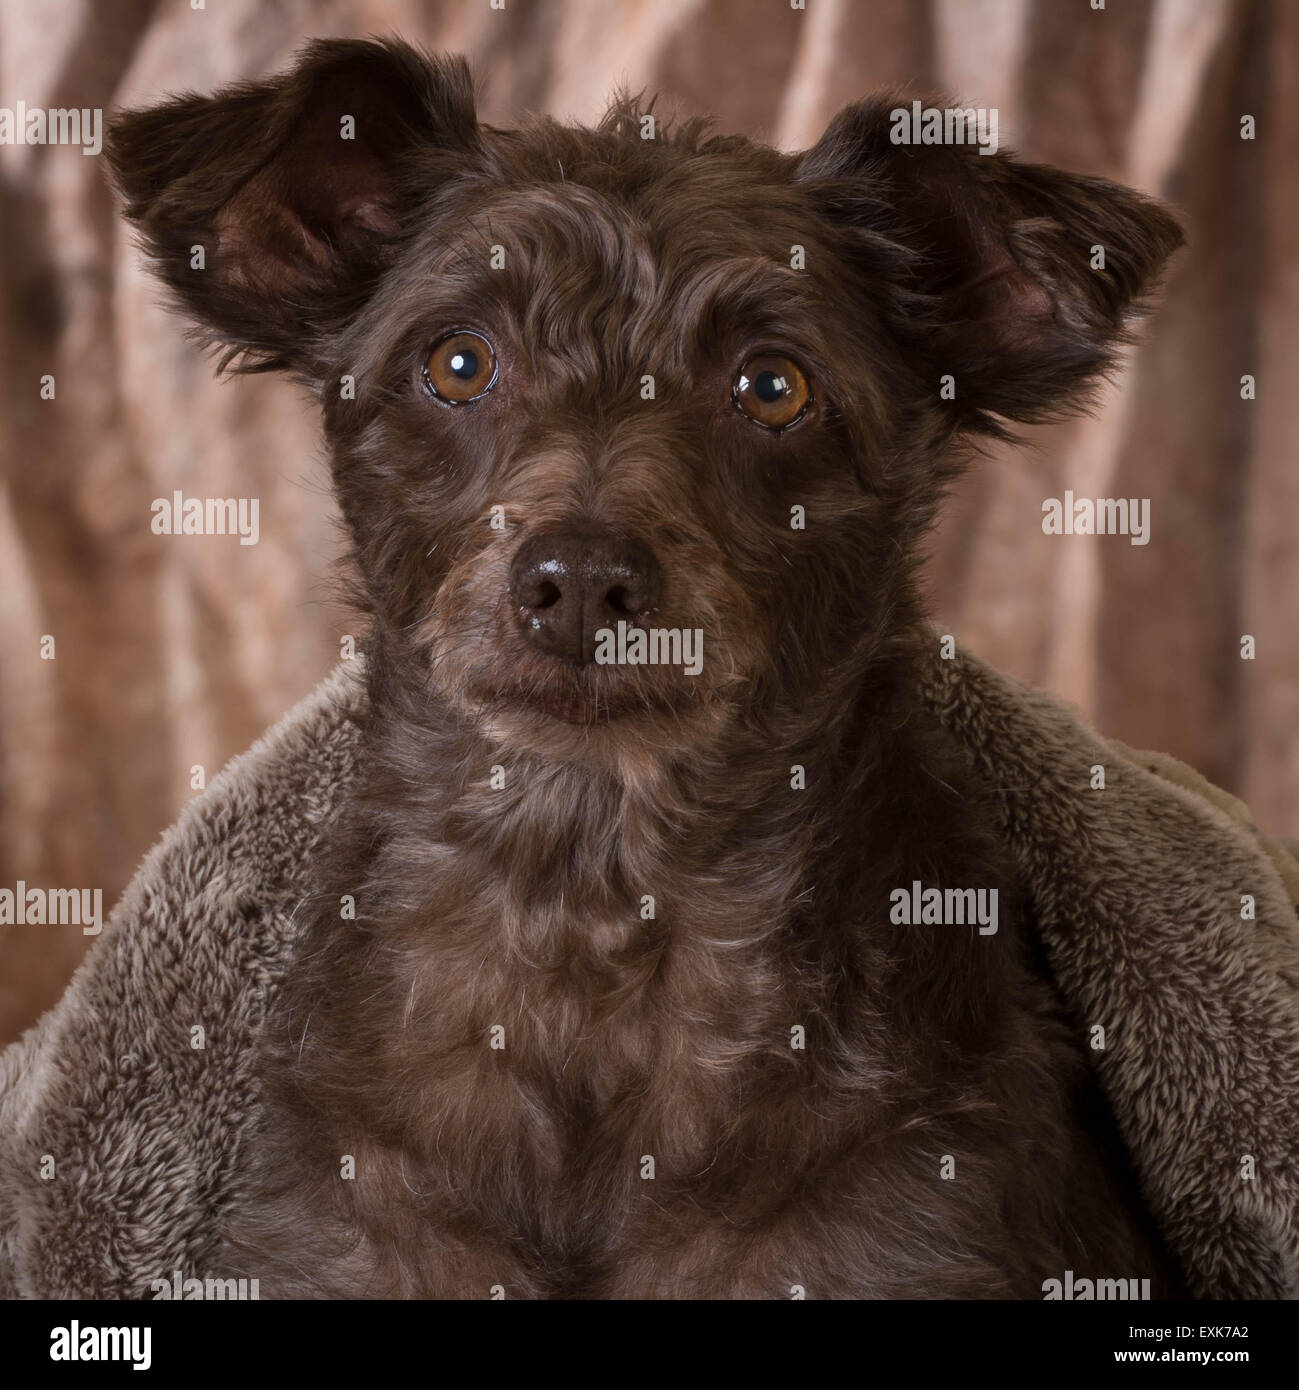 Portrait of a cute dog Banque D'Images